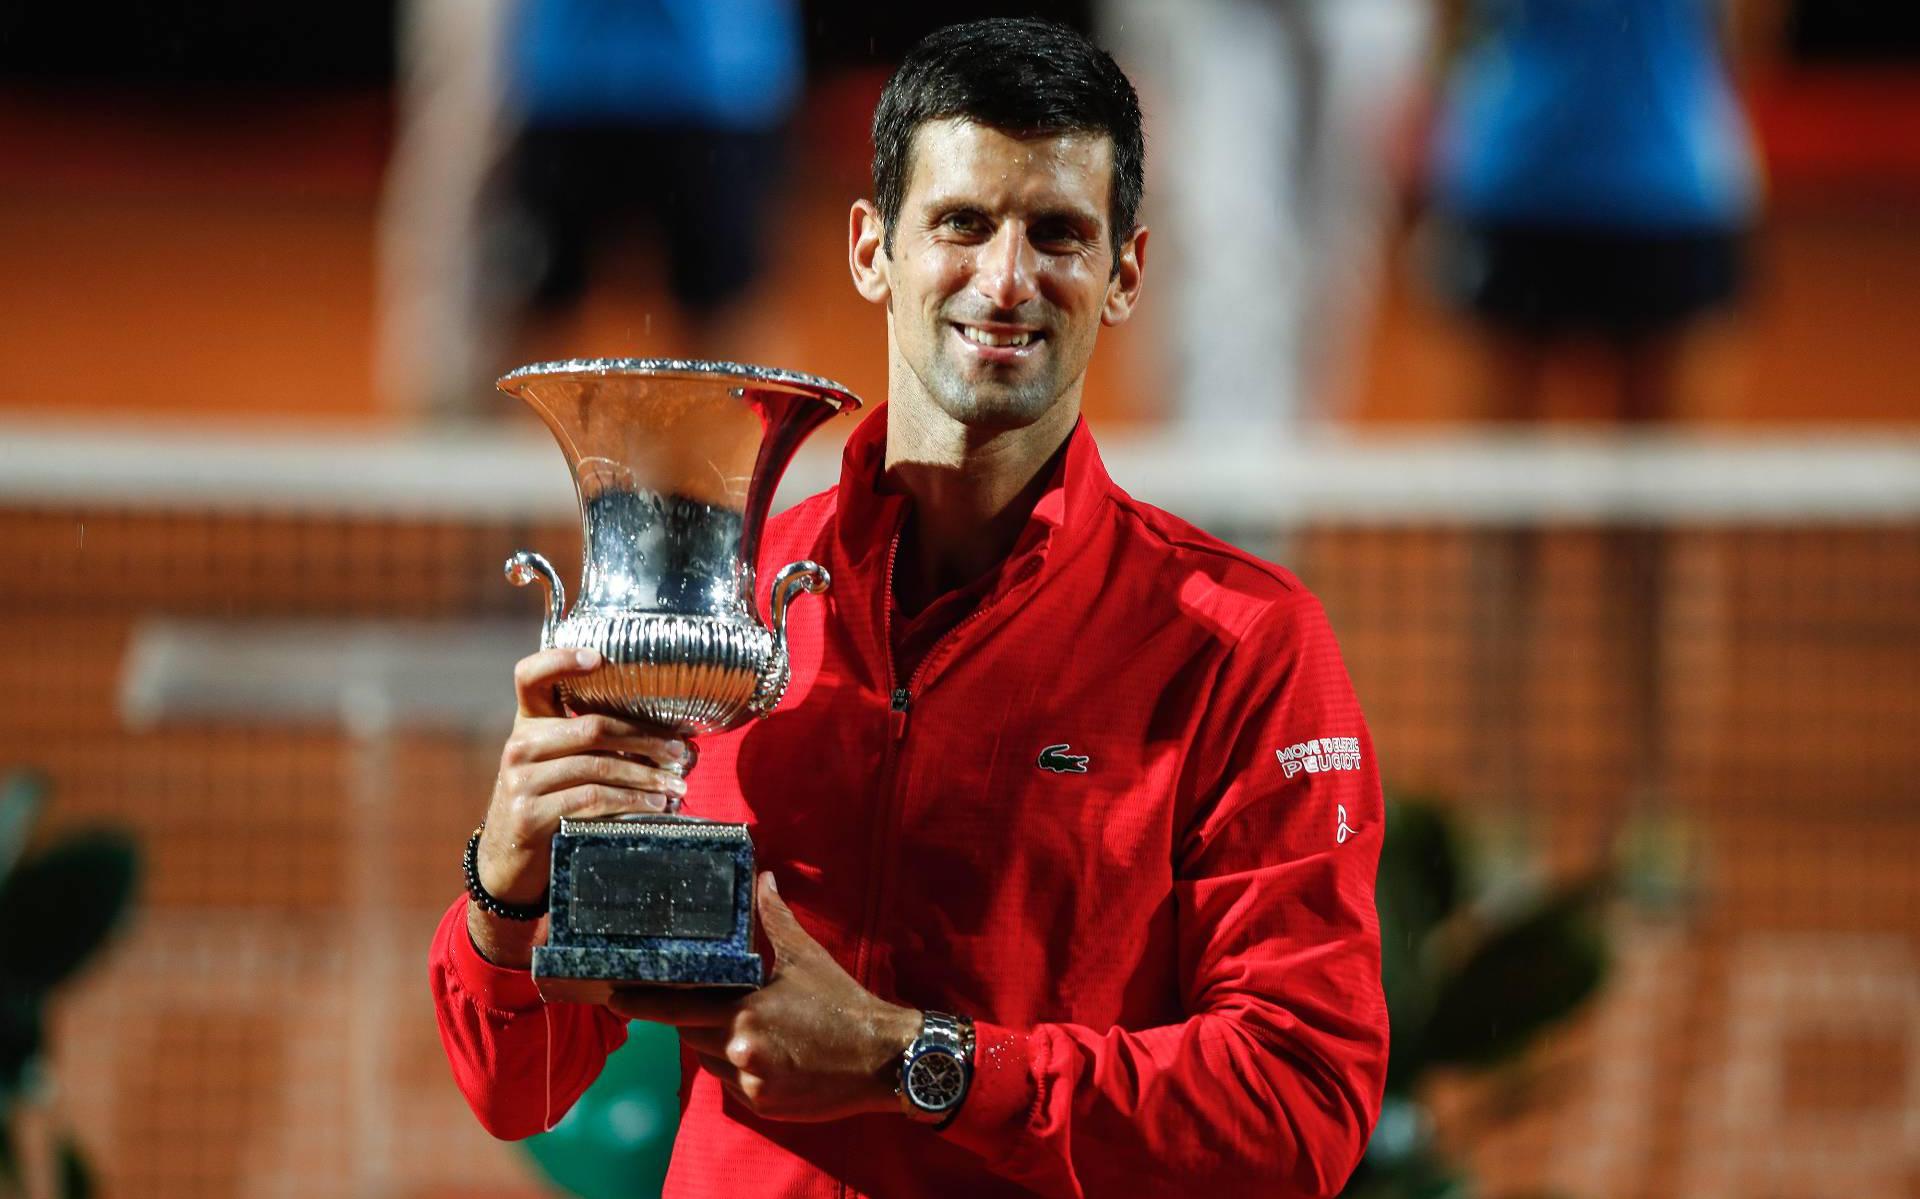 Recordhouder Djokovic zet zijn geld toch op Nadal in Parijs